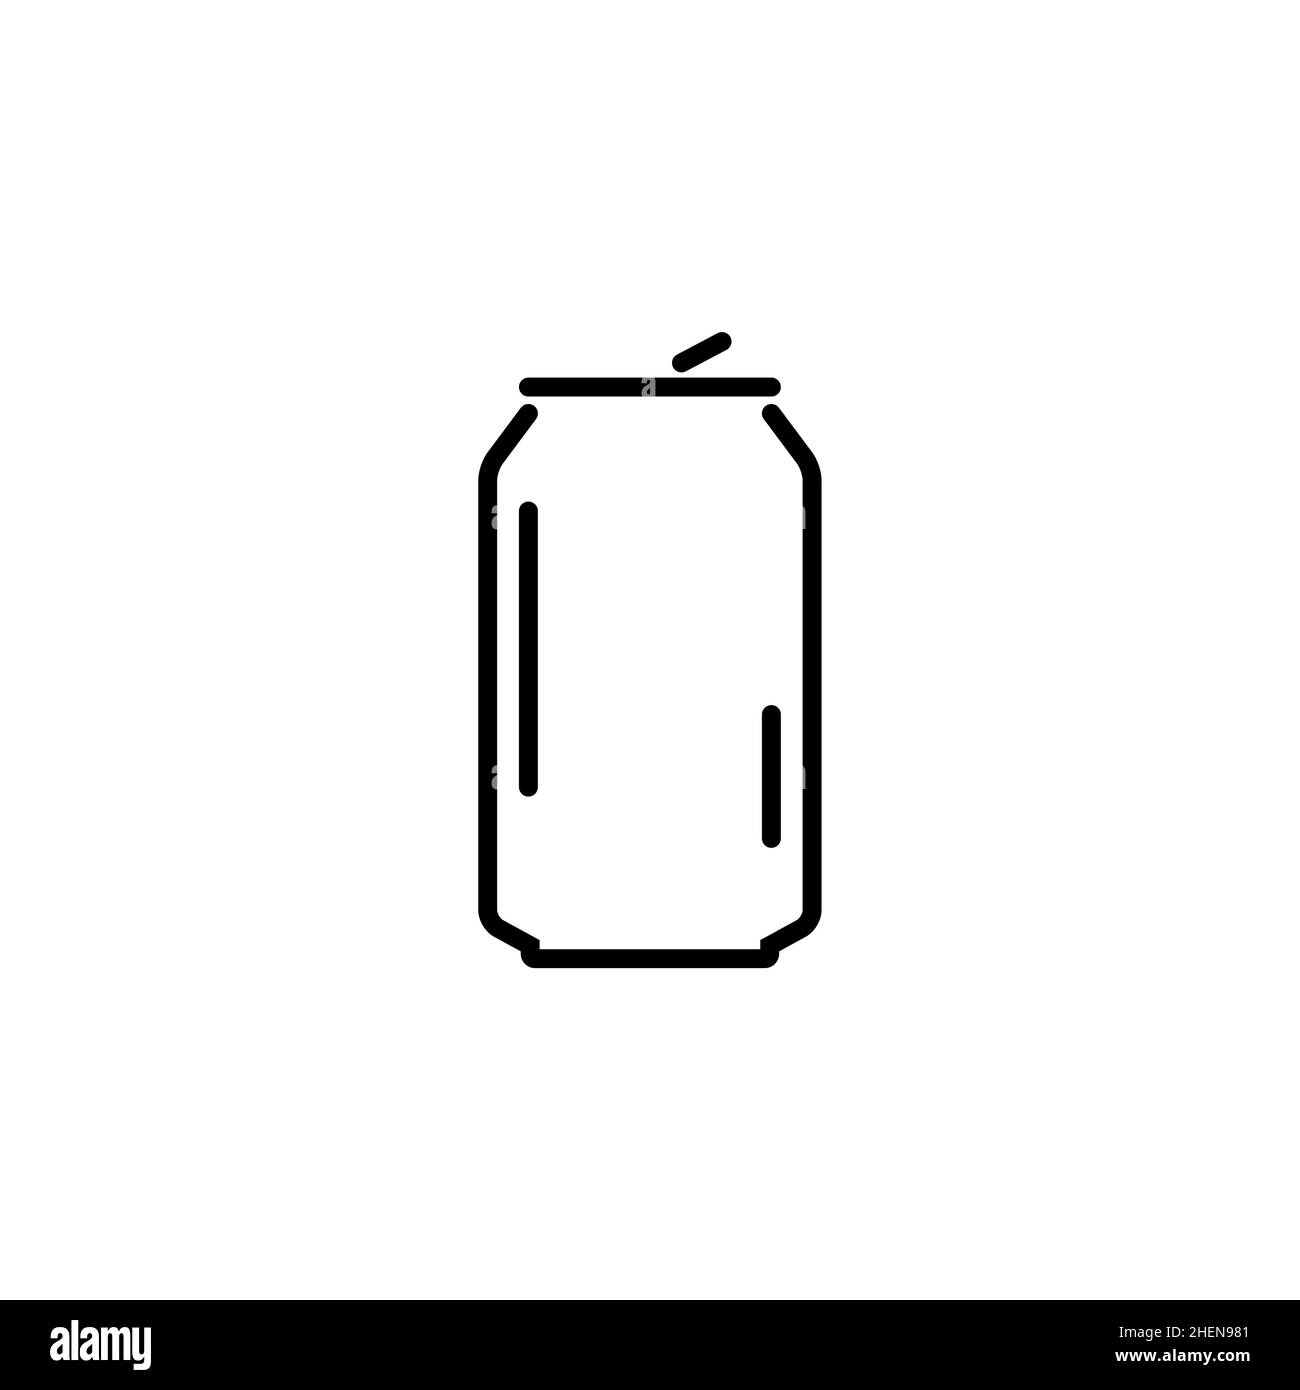 Icona del flacone di alluminio con lattina soda line. La lattina in metallo piatta presenta il logo delle bevande Illustrazione Vettoriale